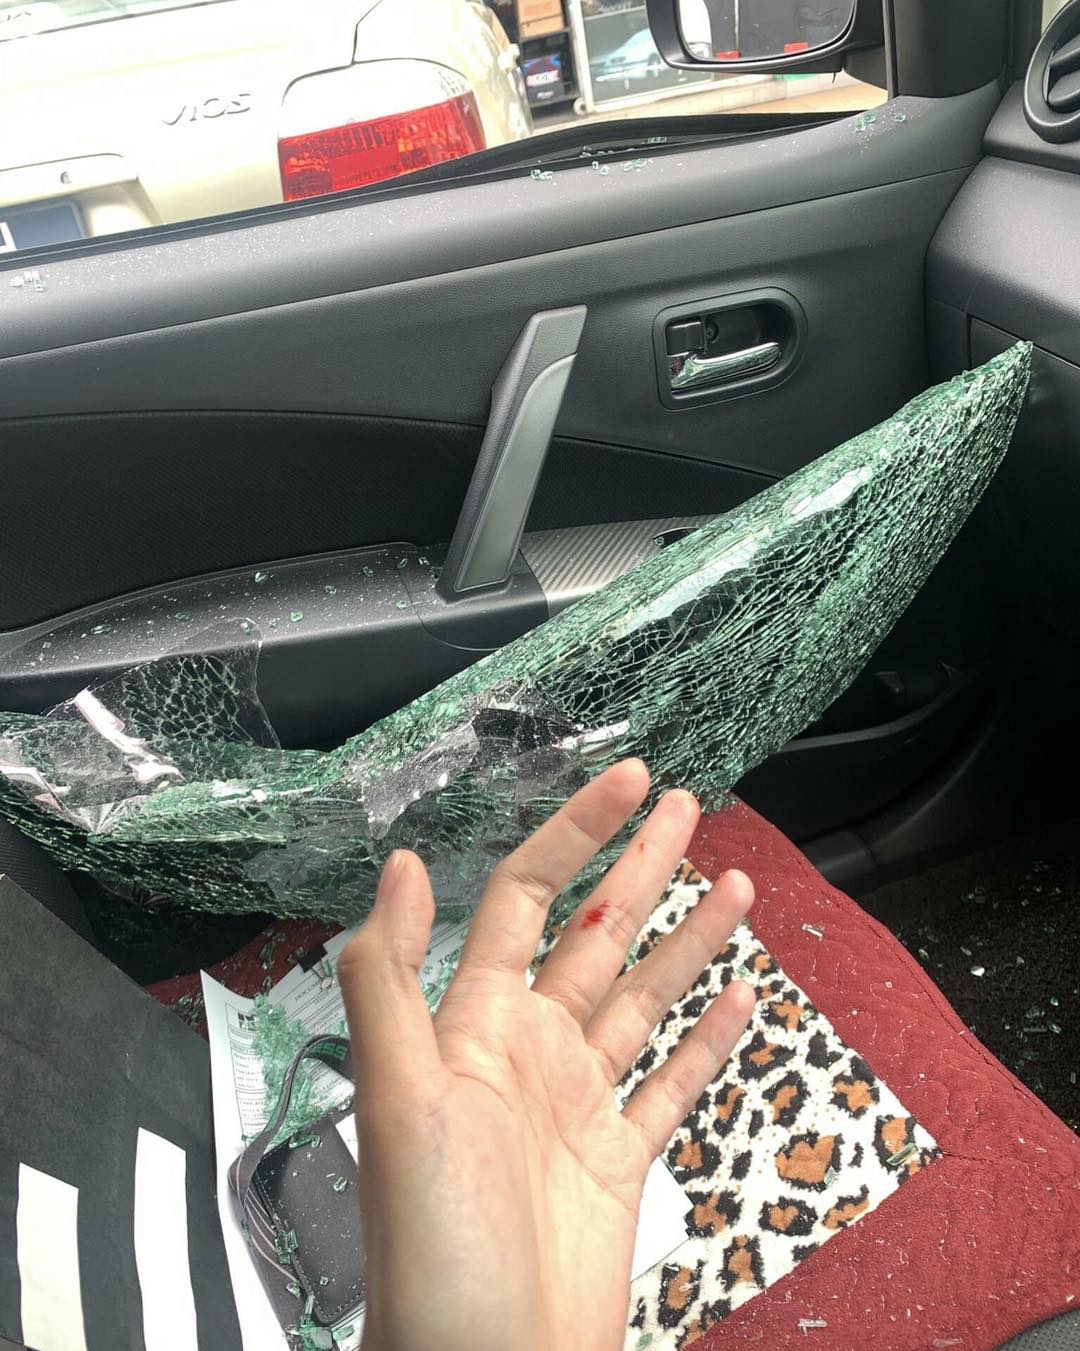 事主的车窗被砸破，左手也因为拉扯手提袋而受伤。（照片取自网络）